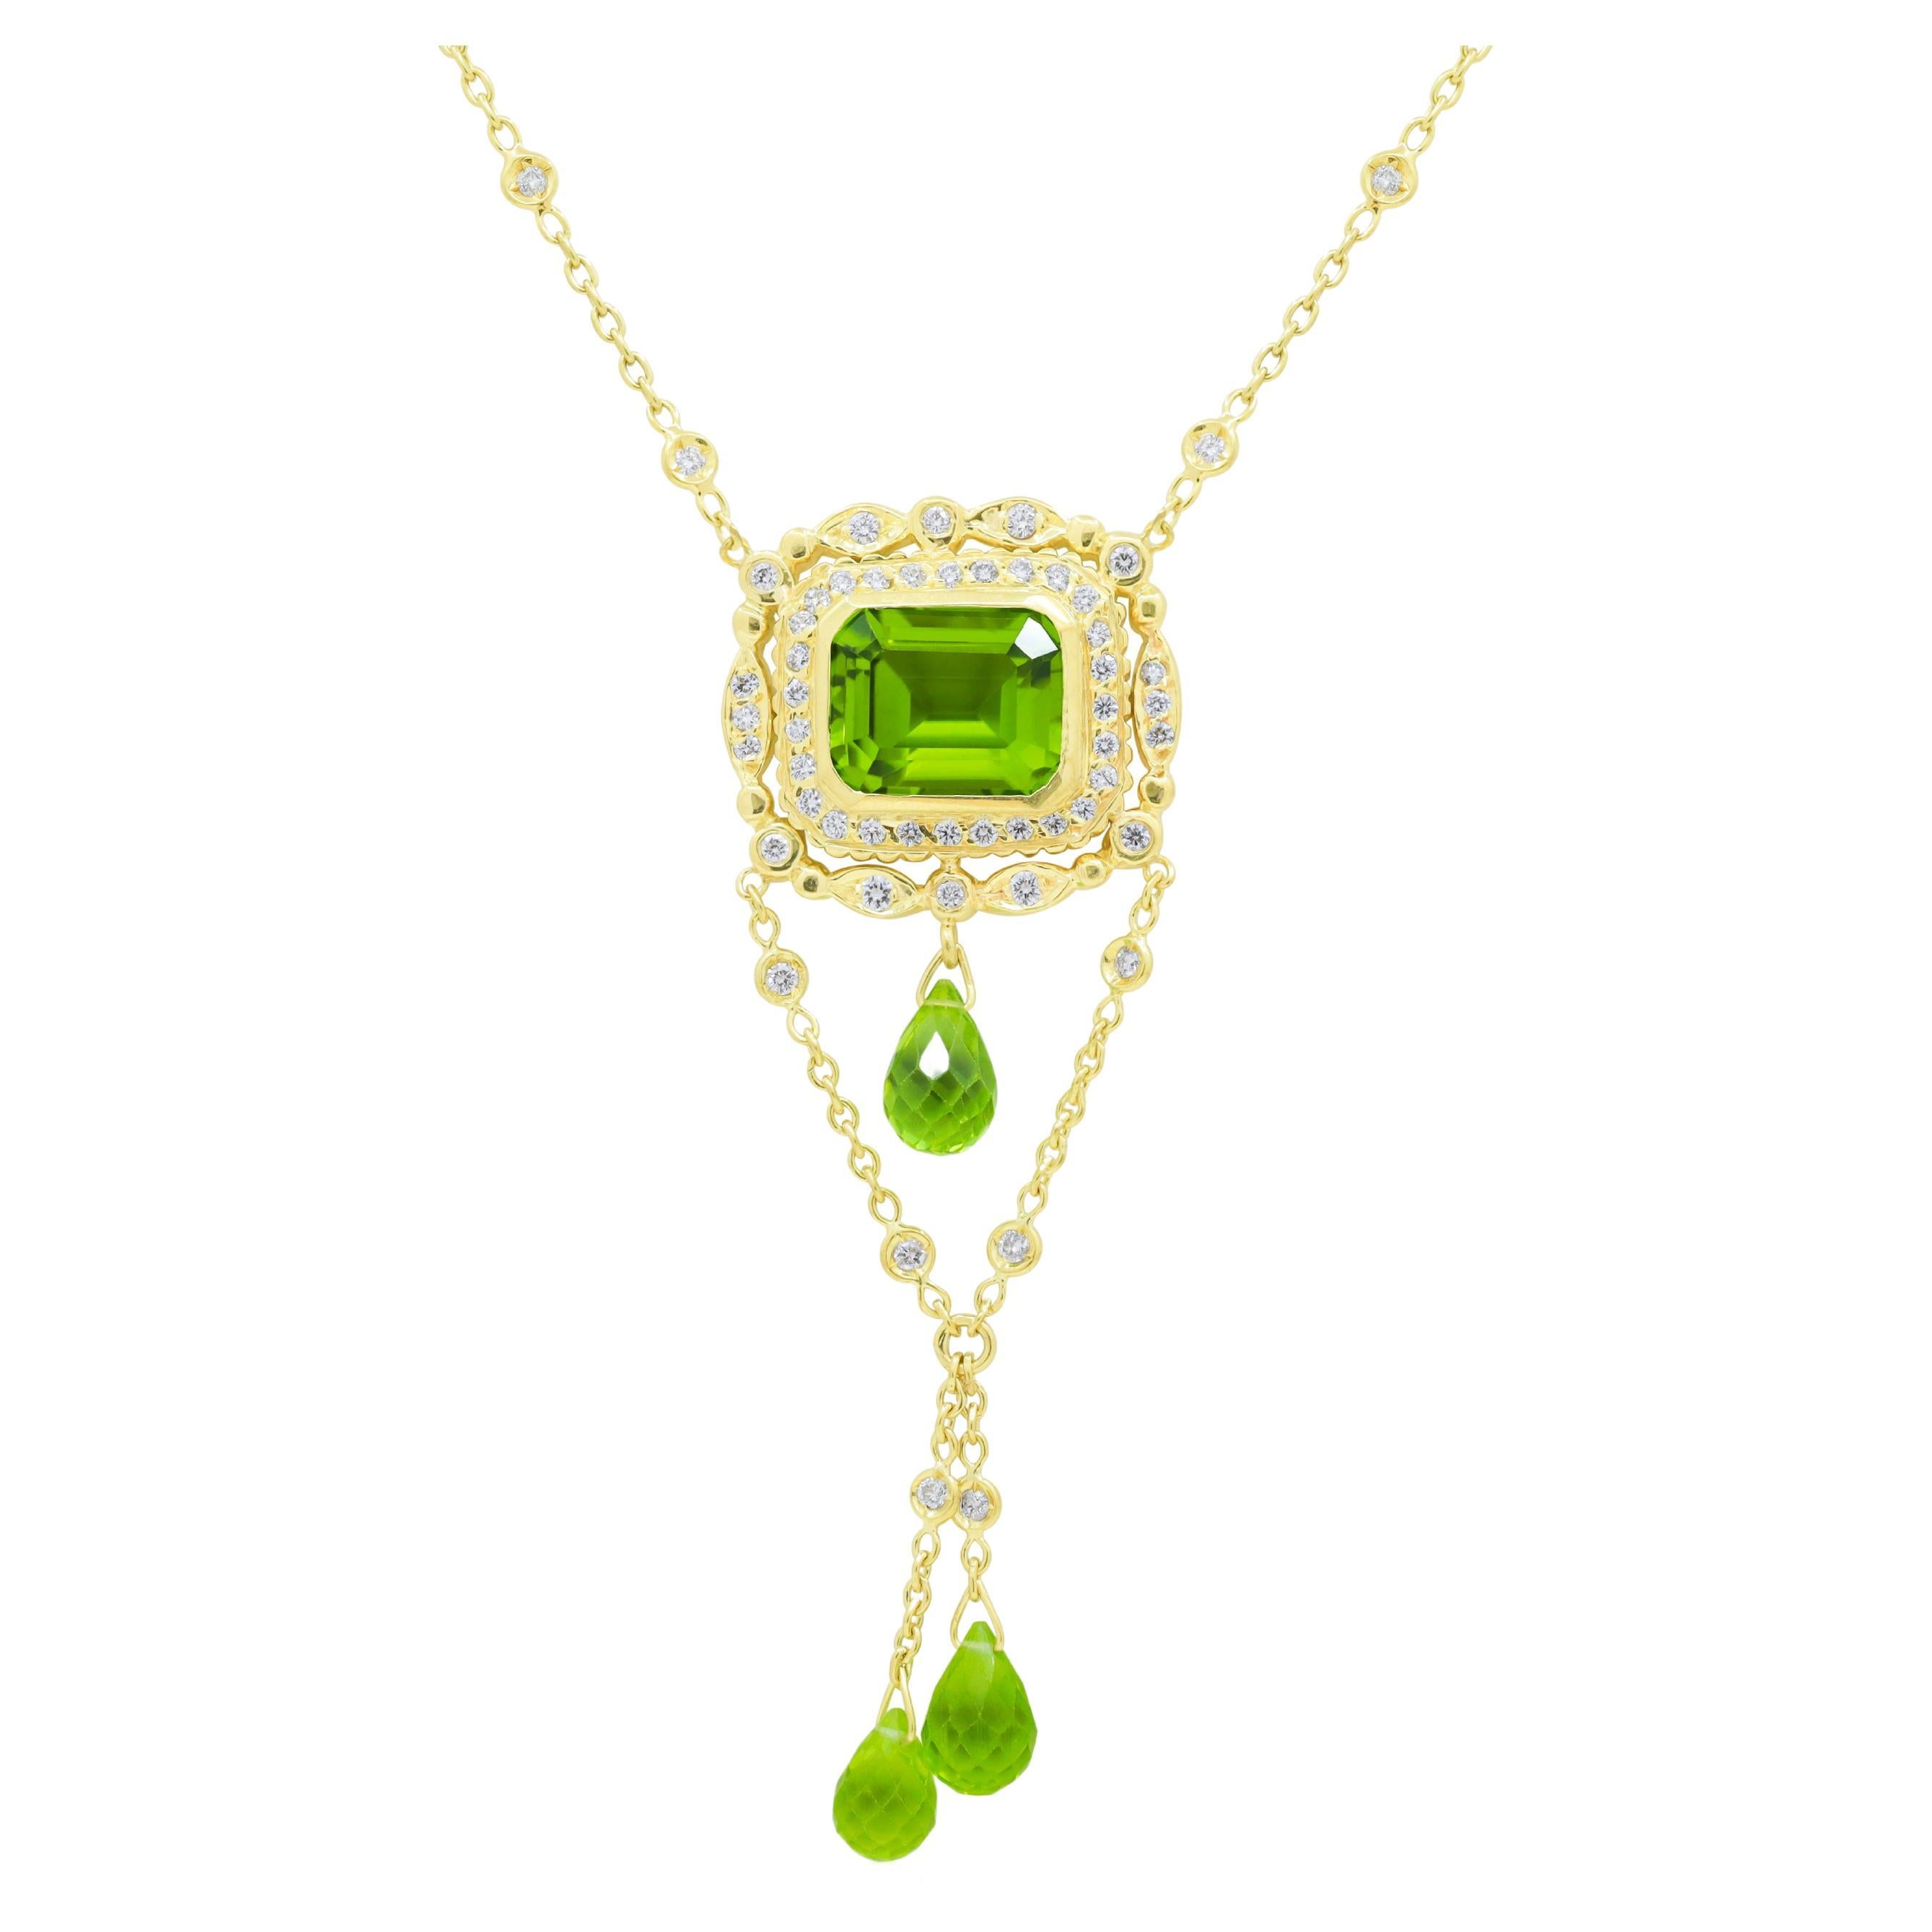 Diana M. 18kt yellow gold diamond pendant with emerald cut peridot 8.00ct 